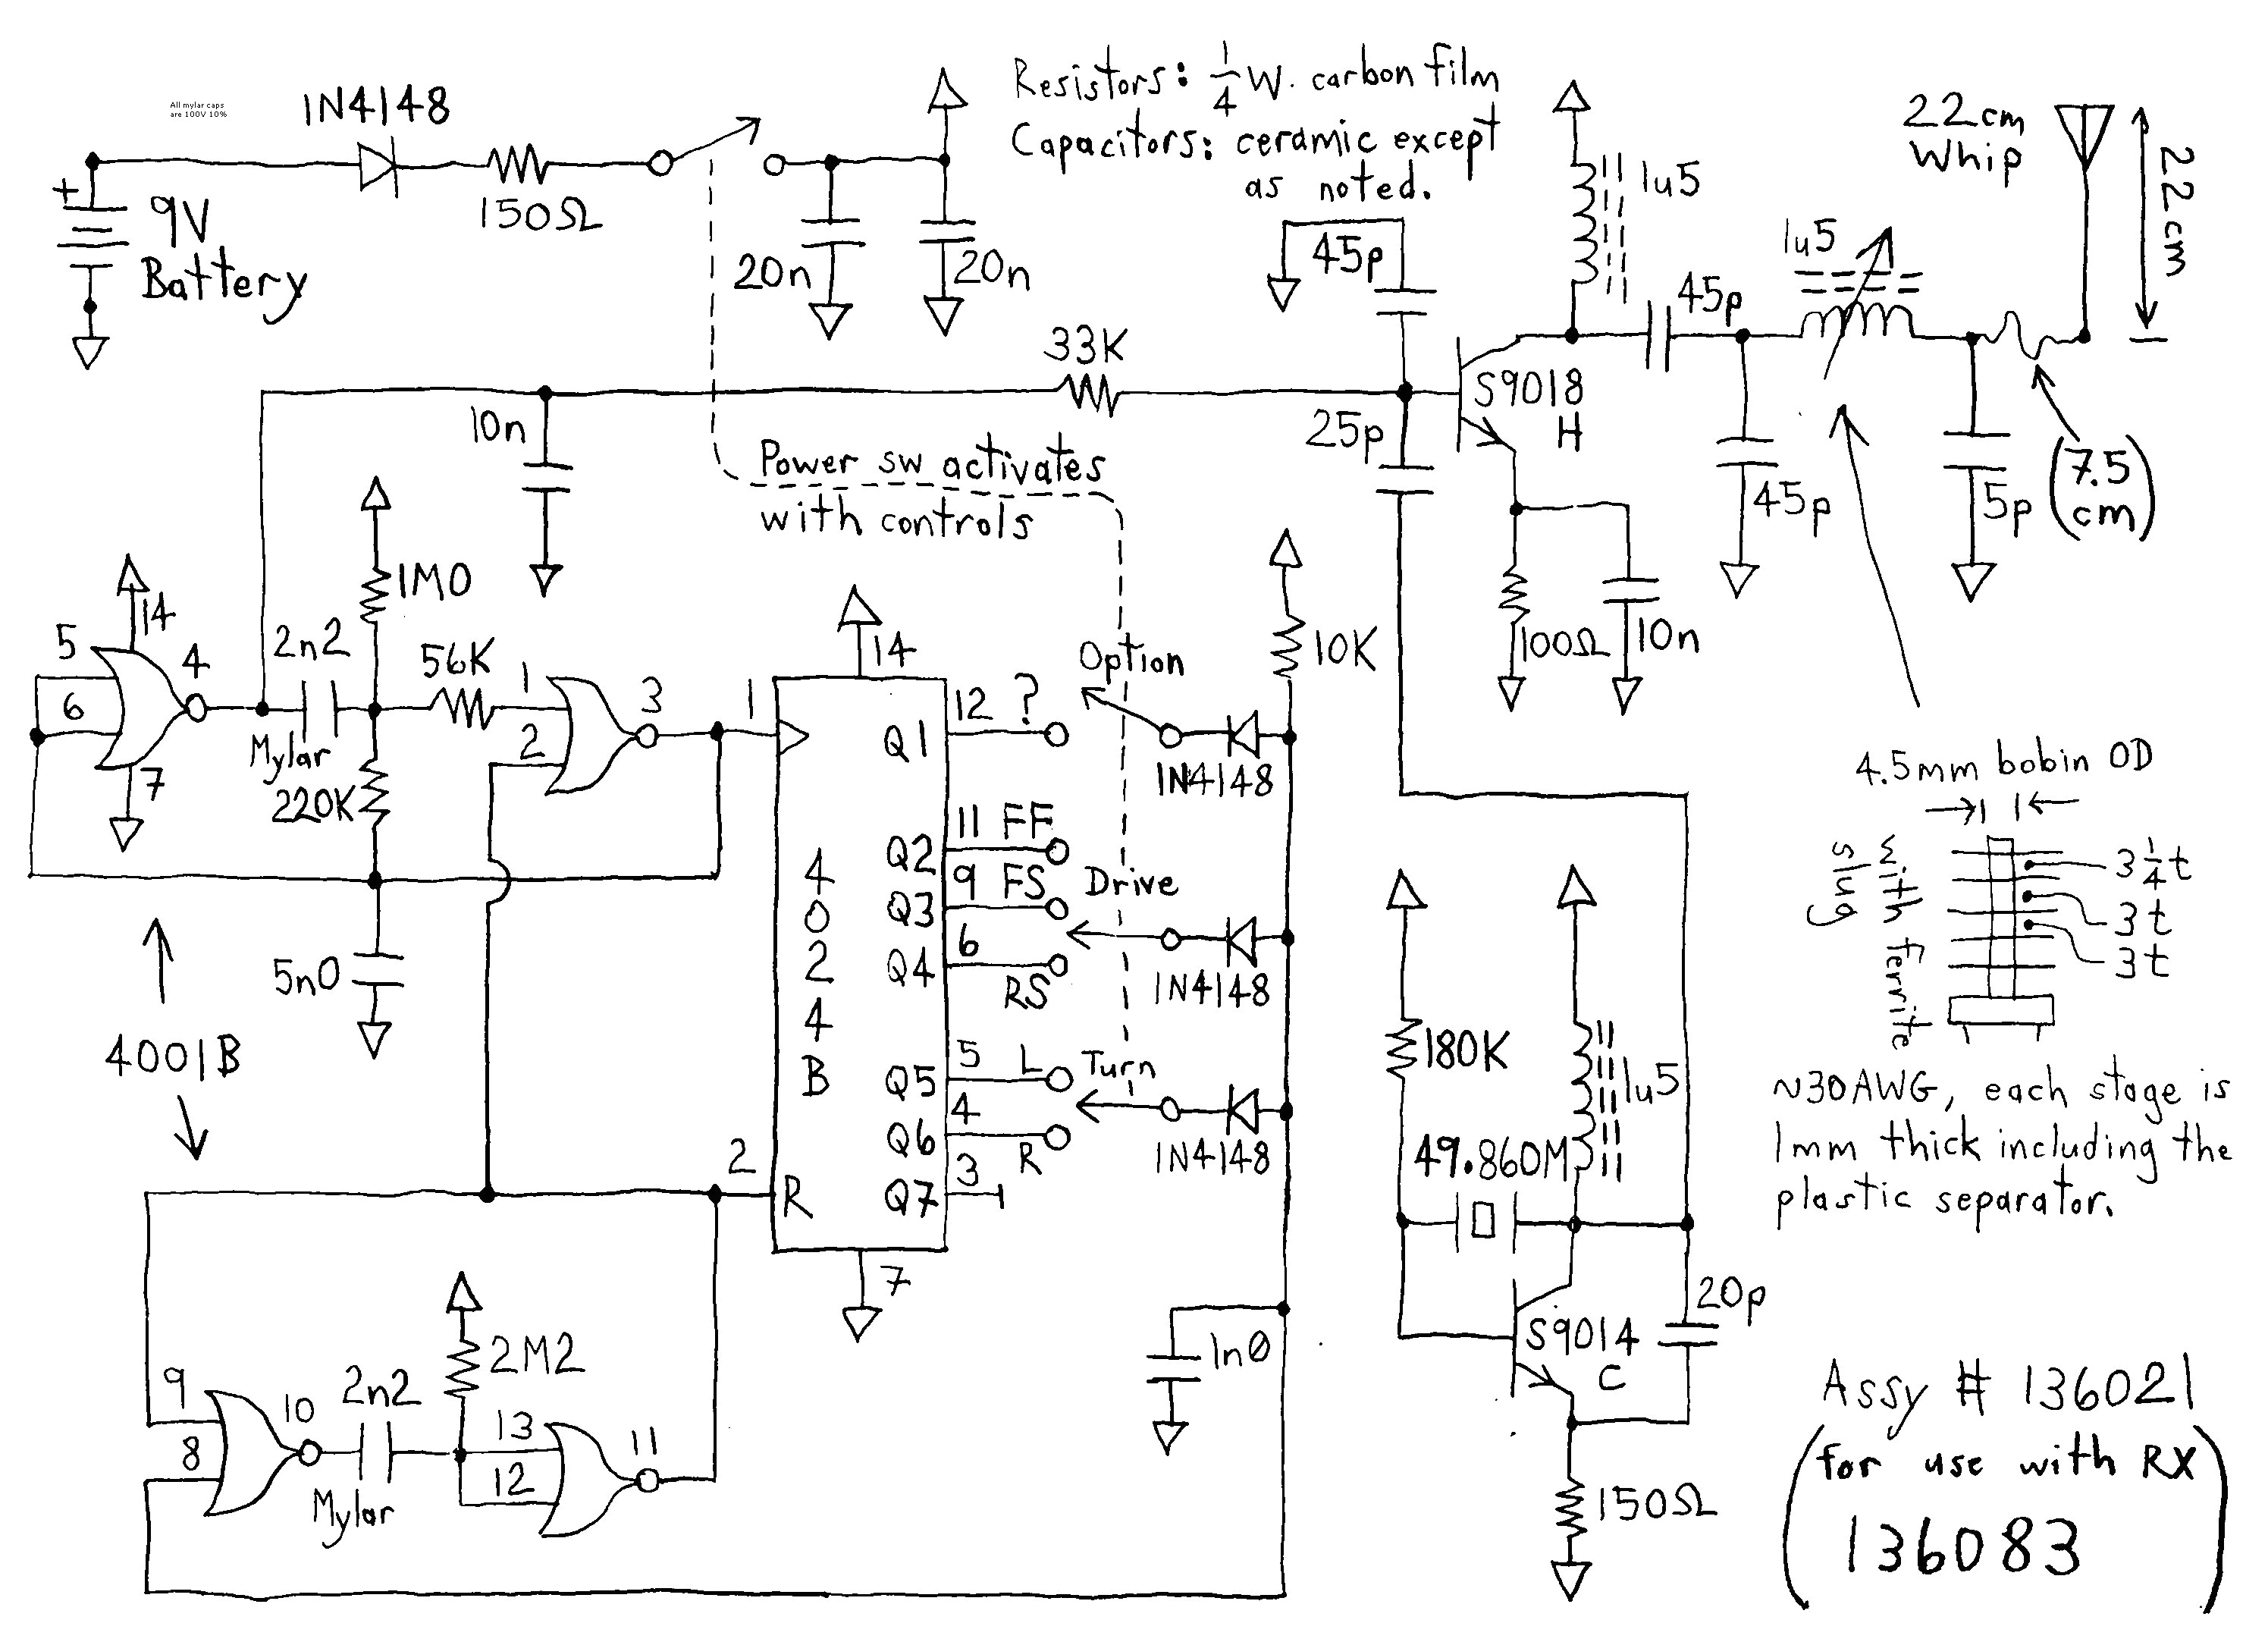 demag brake rectifier diagram elegant cm hoist wiring diagrams model demag brake rectifier diagram new chain